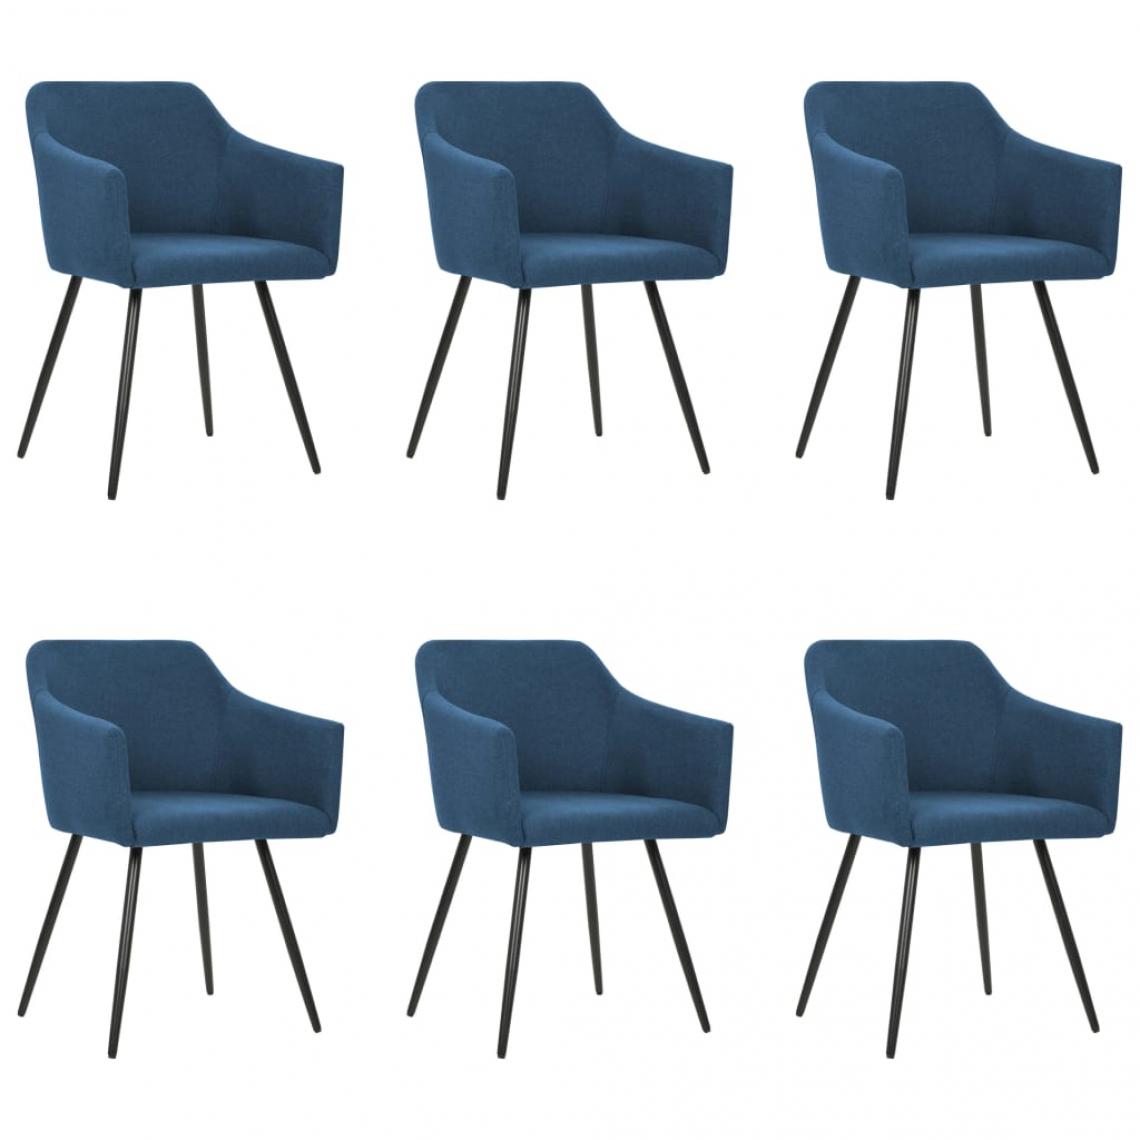 Decoshop26 - Lot de 6 chaises de salle à manger cuisine design moderne tissu bleu CDS022203 - Chaises